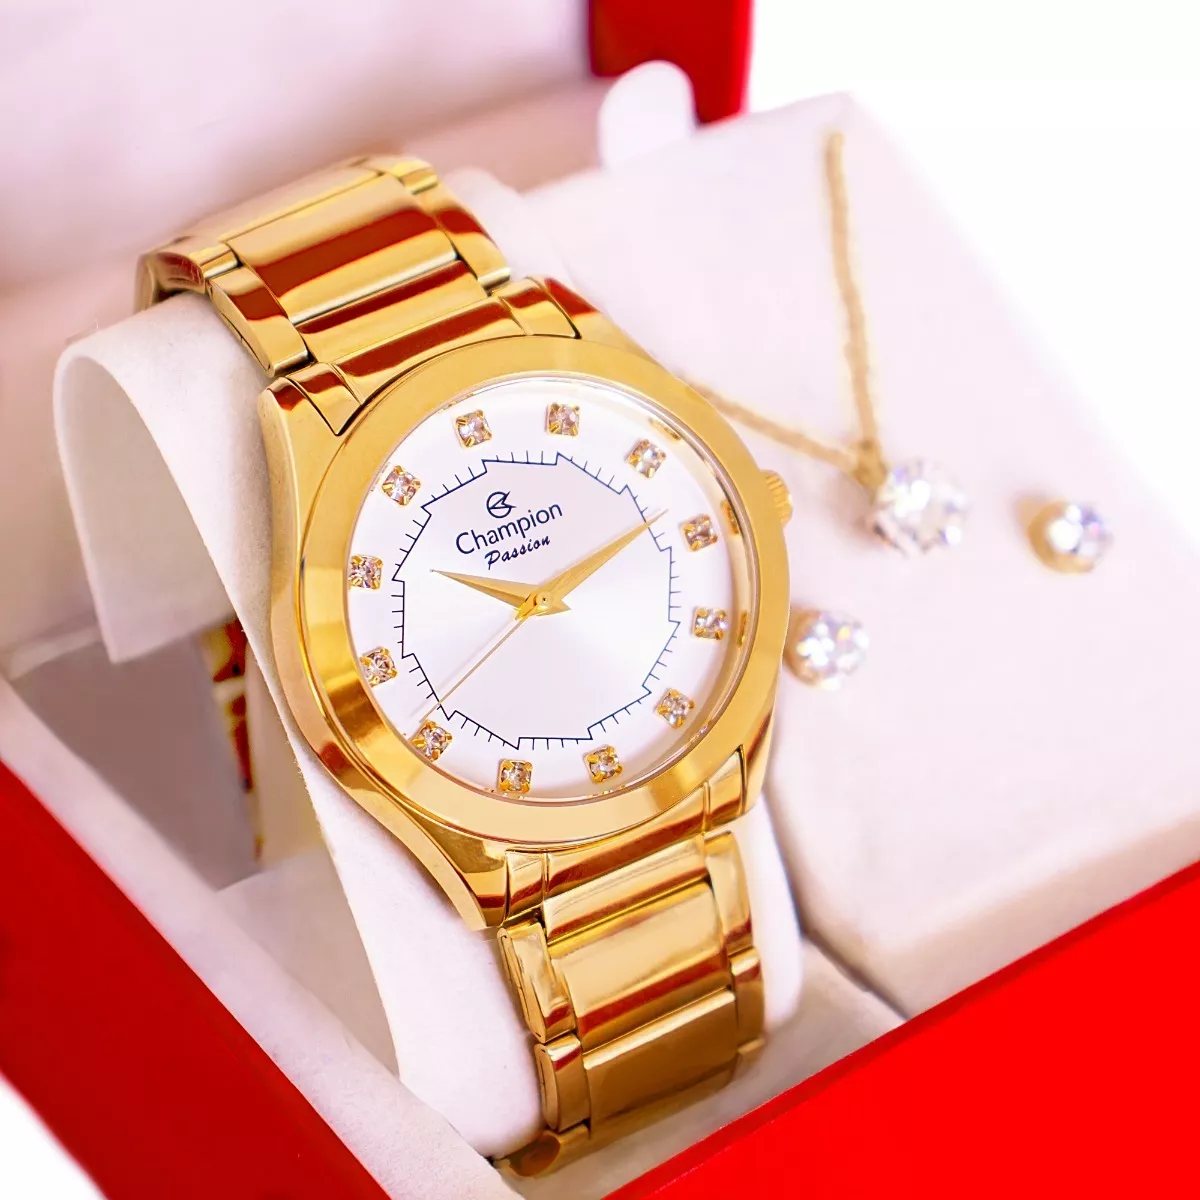 Relógio Champion Feminino Dourado Ch24759w + Colar E Brincos